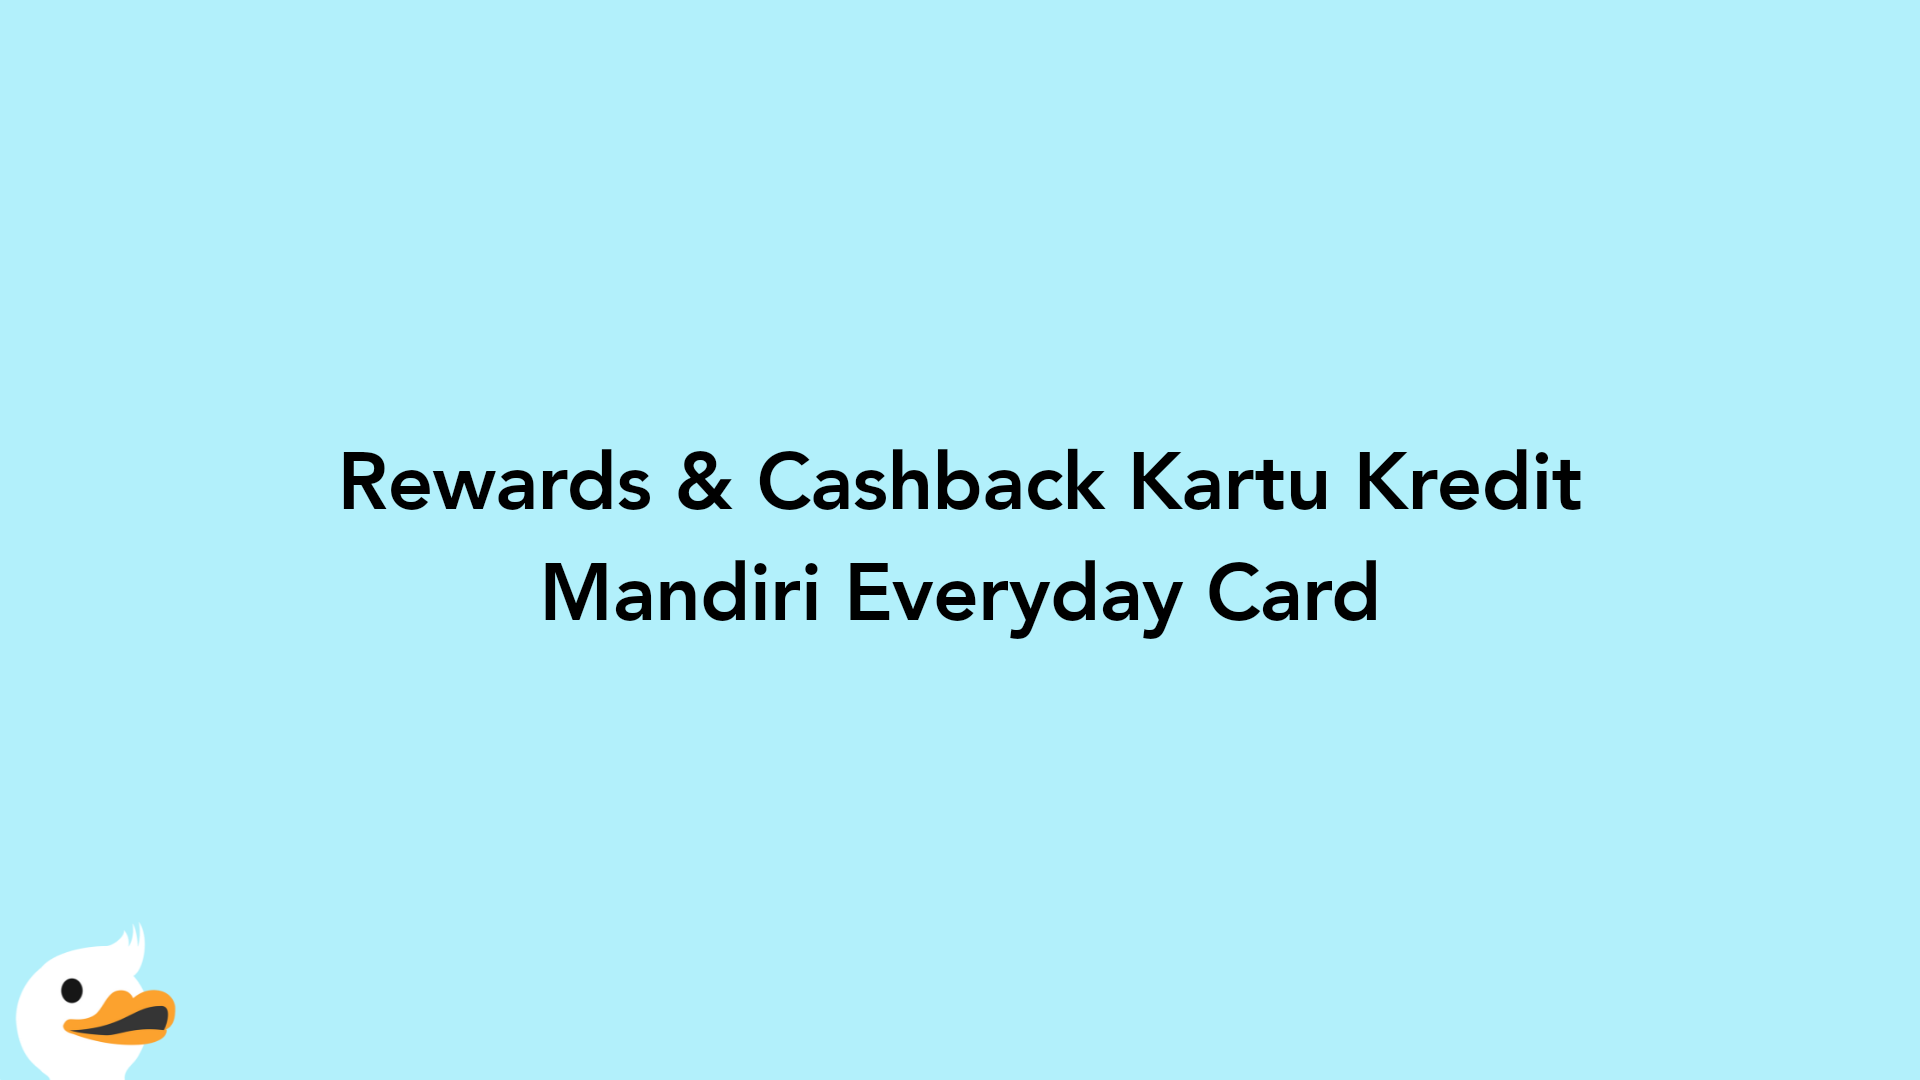 Rewards & Cashback Kartu Kredit Mandiri Everyday Card